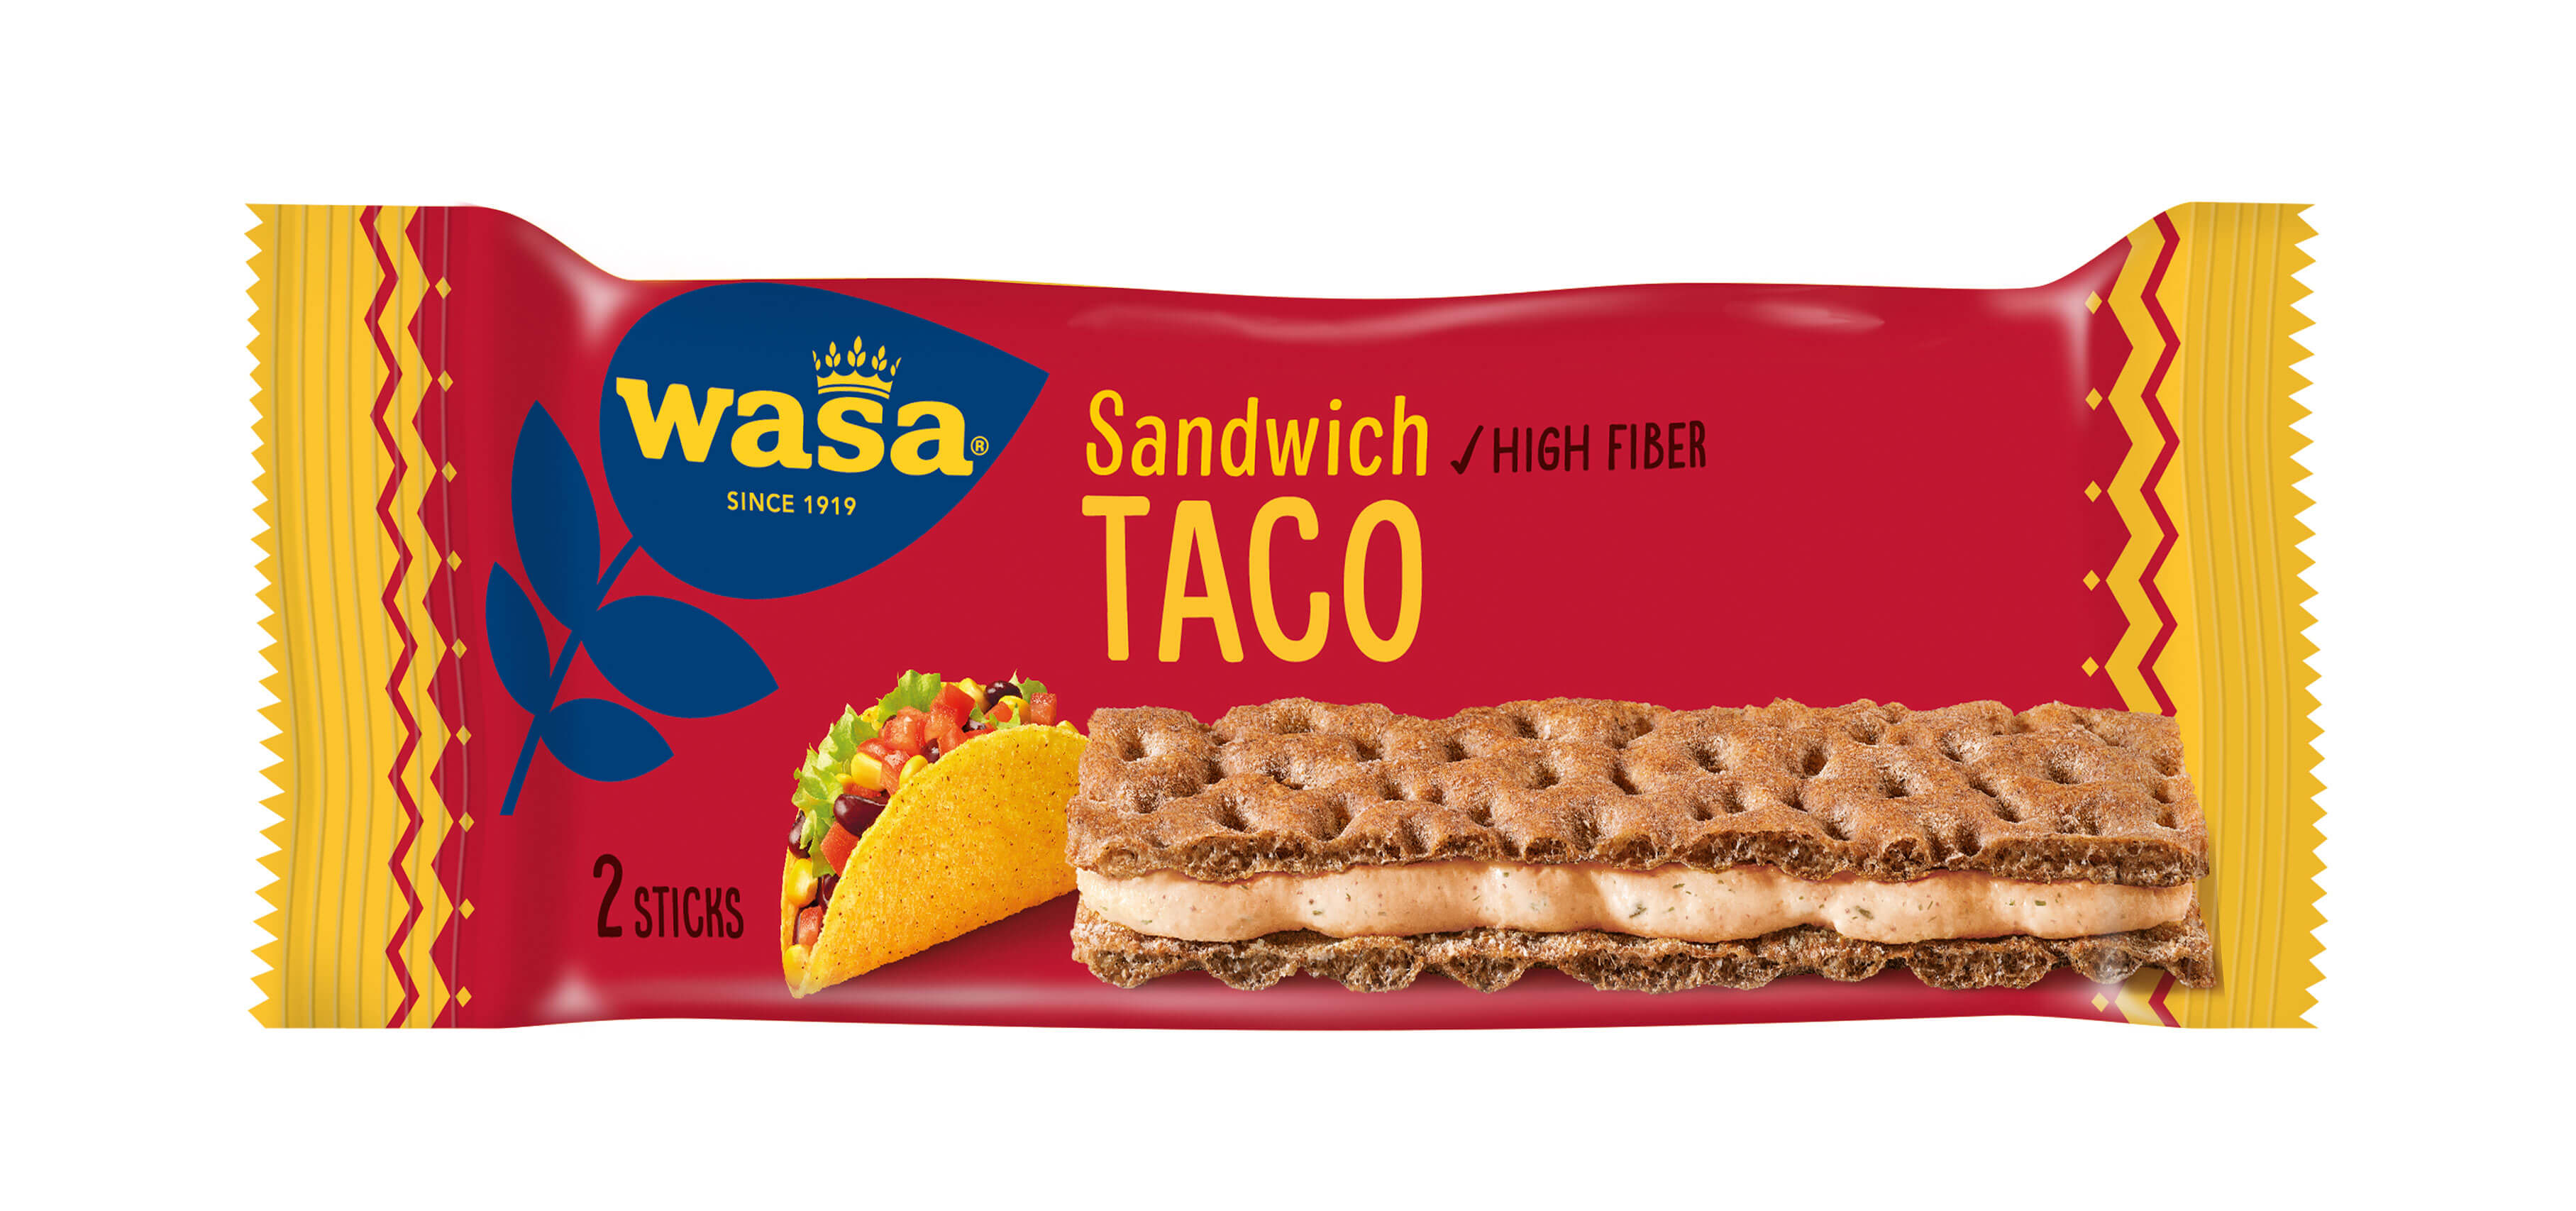 Wasa Sandwich Taco - Upptäck ett veganskt mellanmål, gott knäckebröd med krämig fyllning. Utmärkt som mellanmål på språng. Enkla mellanmål efter eller innan skolan eller hemma.